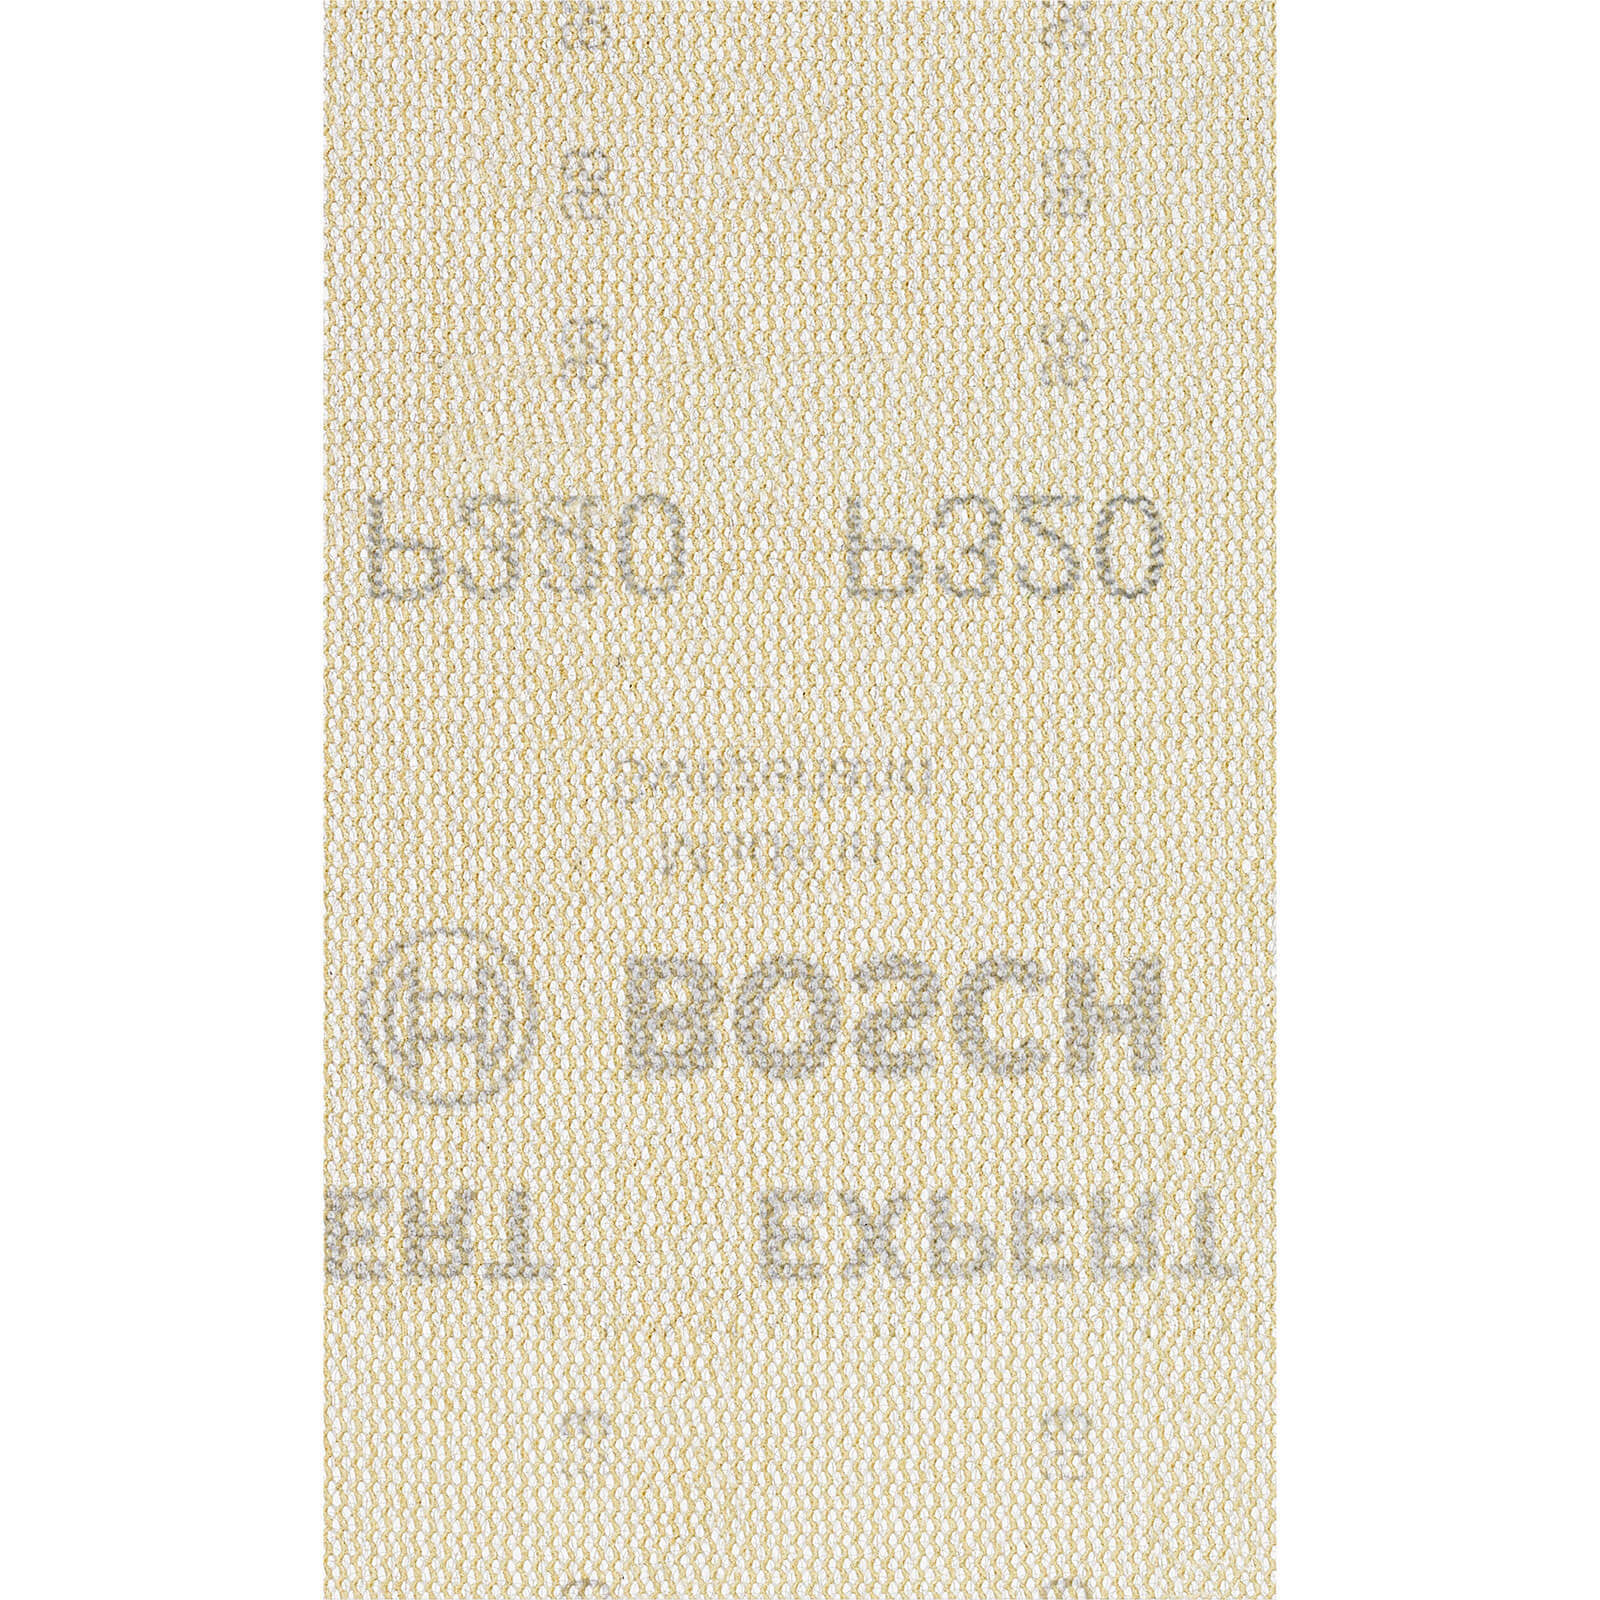 Bosch Expert M480 80mm x 133mm Net Abrasive Sanding Sheets 80mm x 133mm 320g Pack of 10